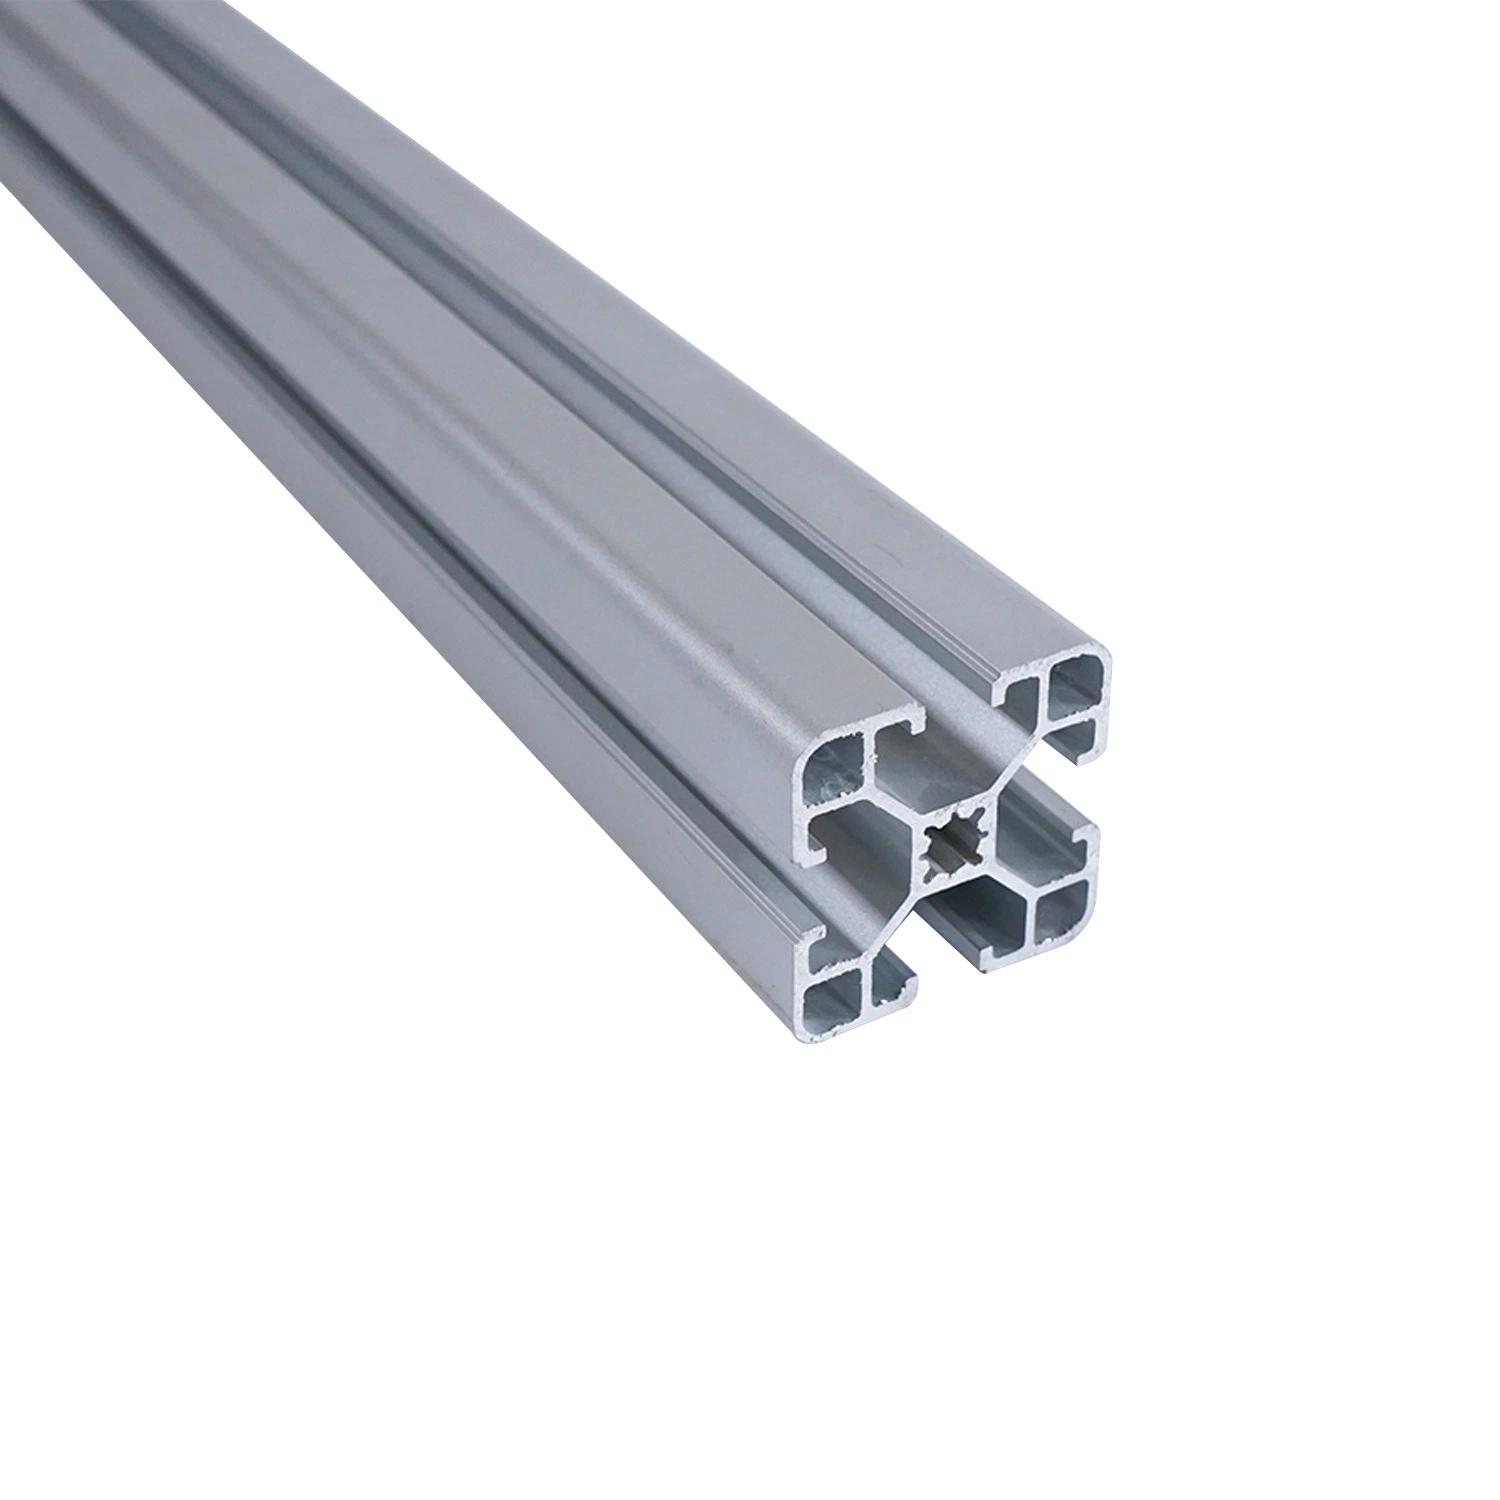 Extrusión de Aluminio Industrial el aislamiento de puertas y ventanas perfiles perfil de aluminio con recubrimiento de polvo